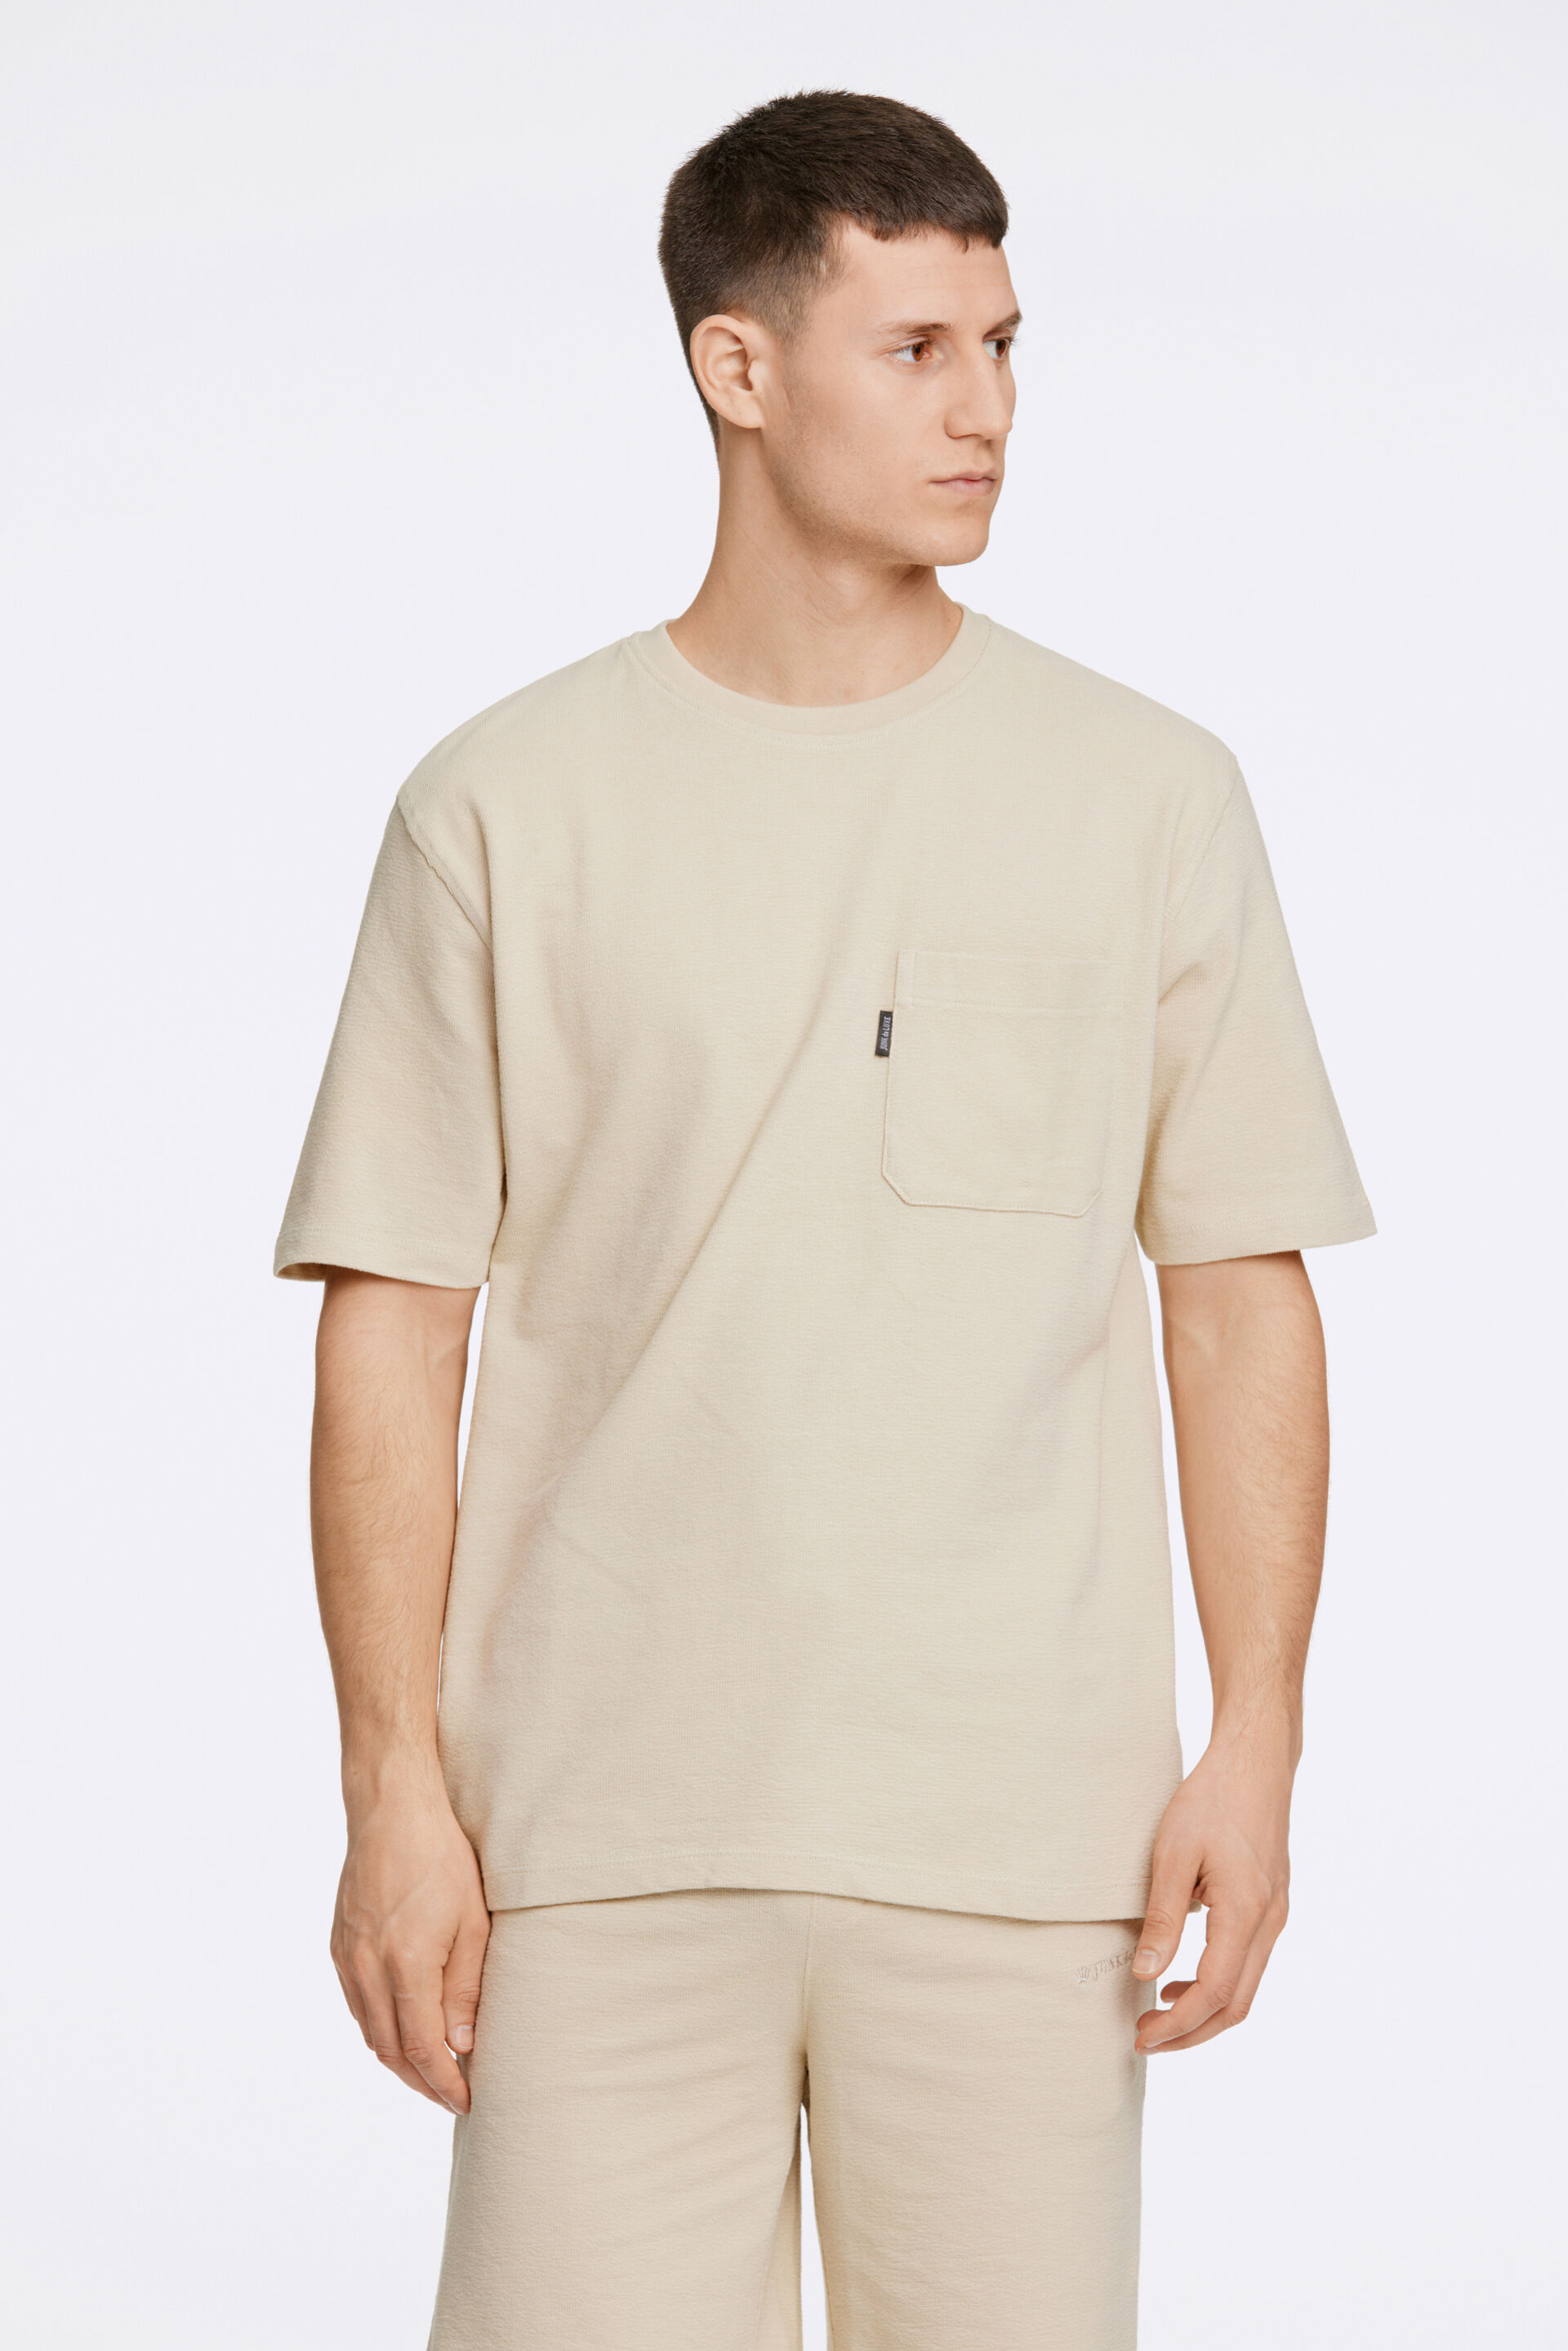 Junk de Luxe  T-shirt Sand 60-452040